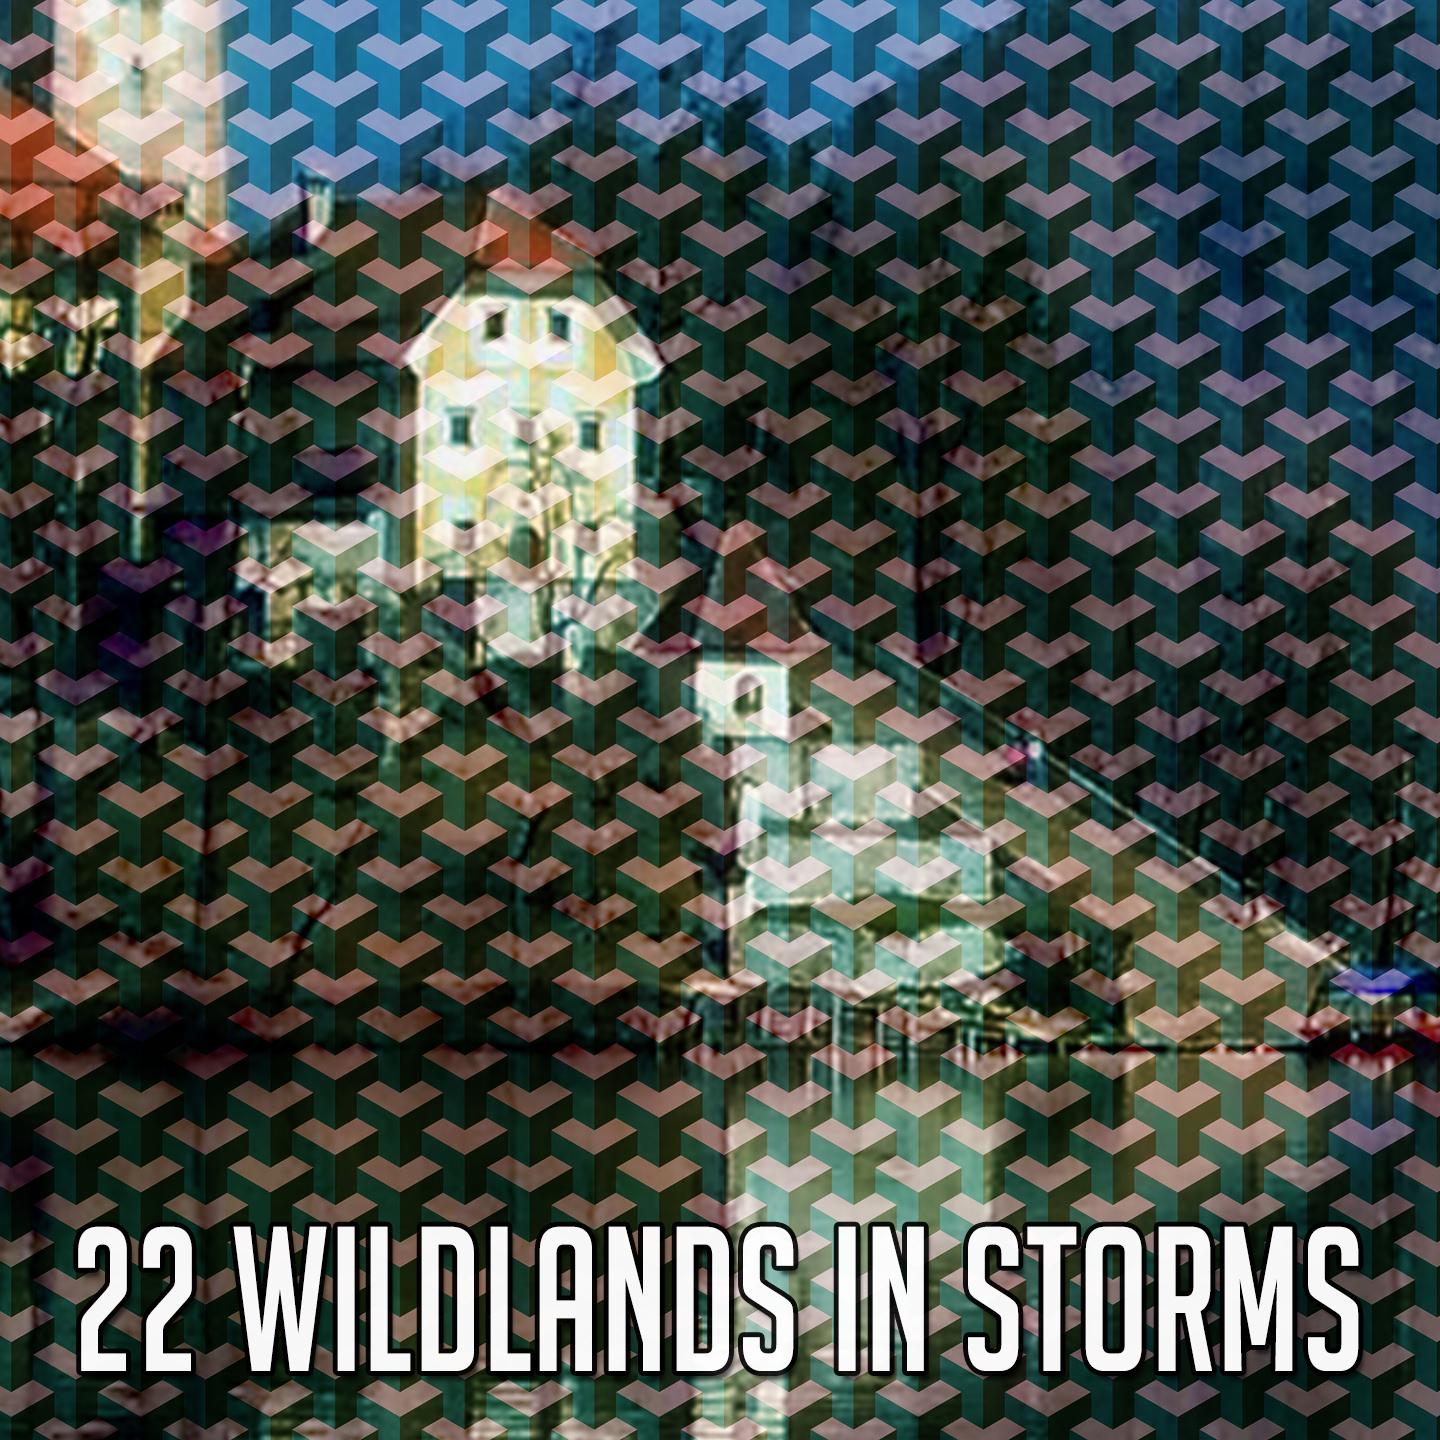 22 Wildlands in Storms